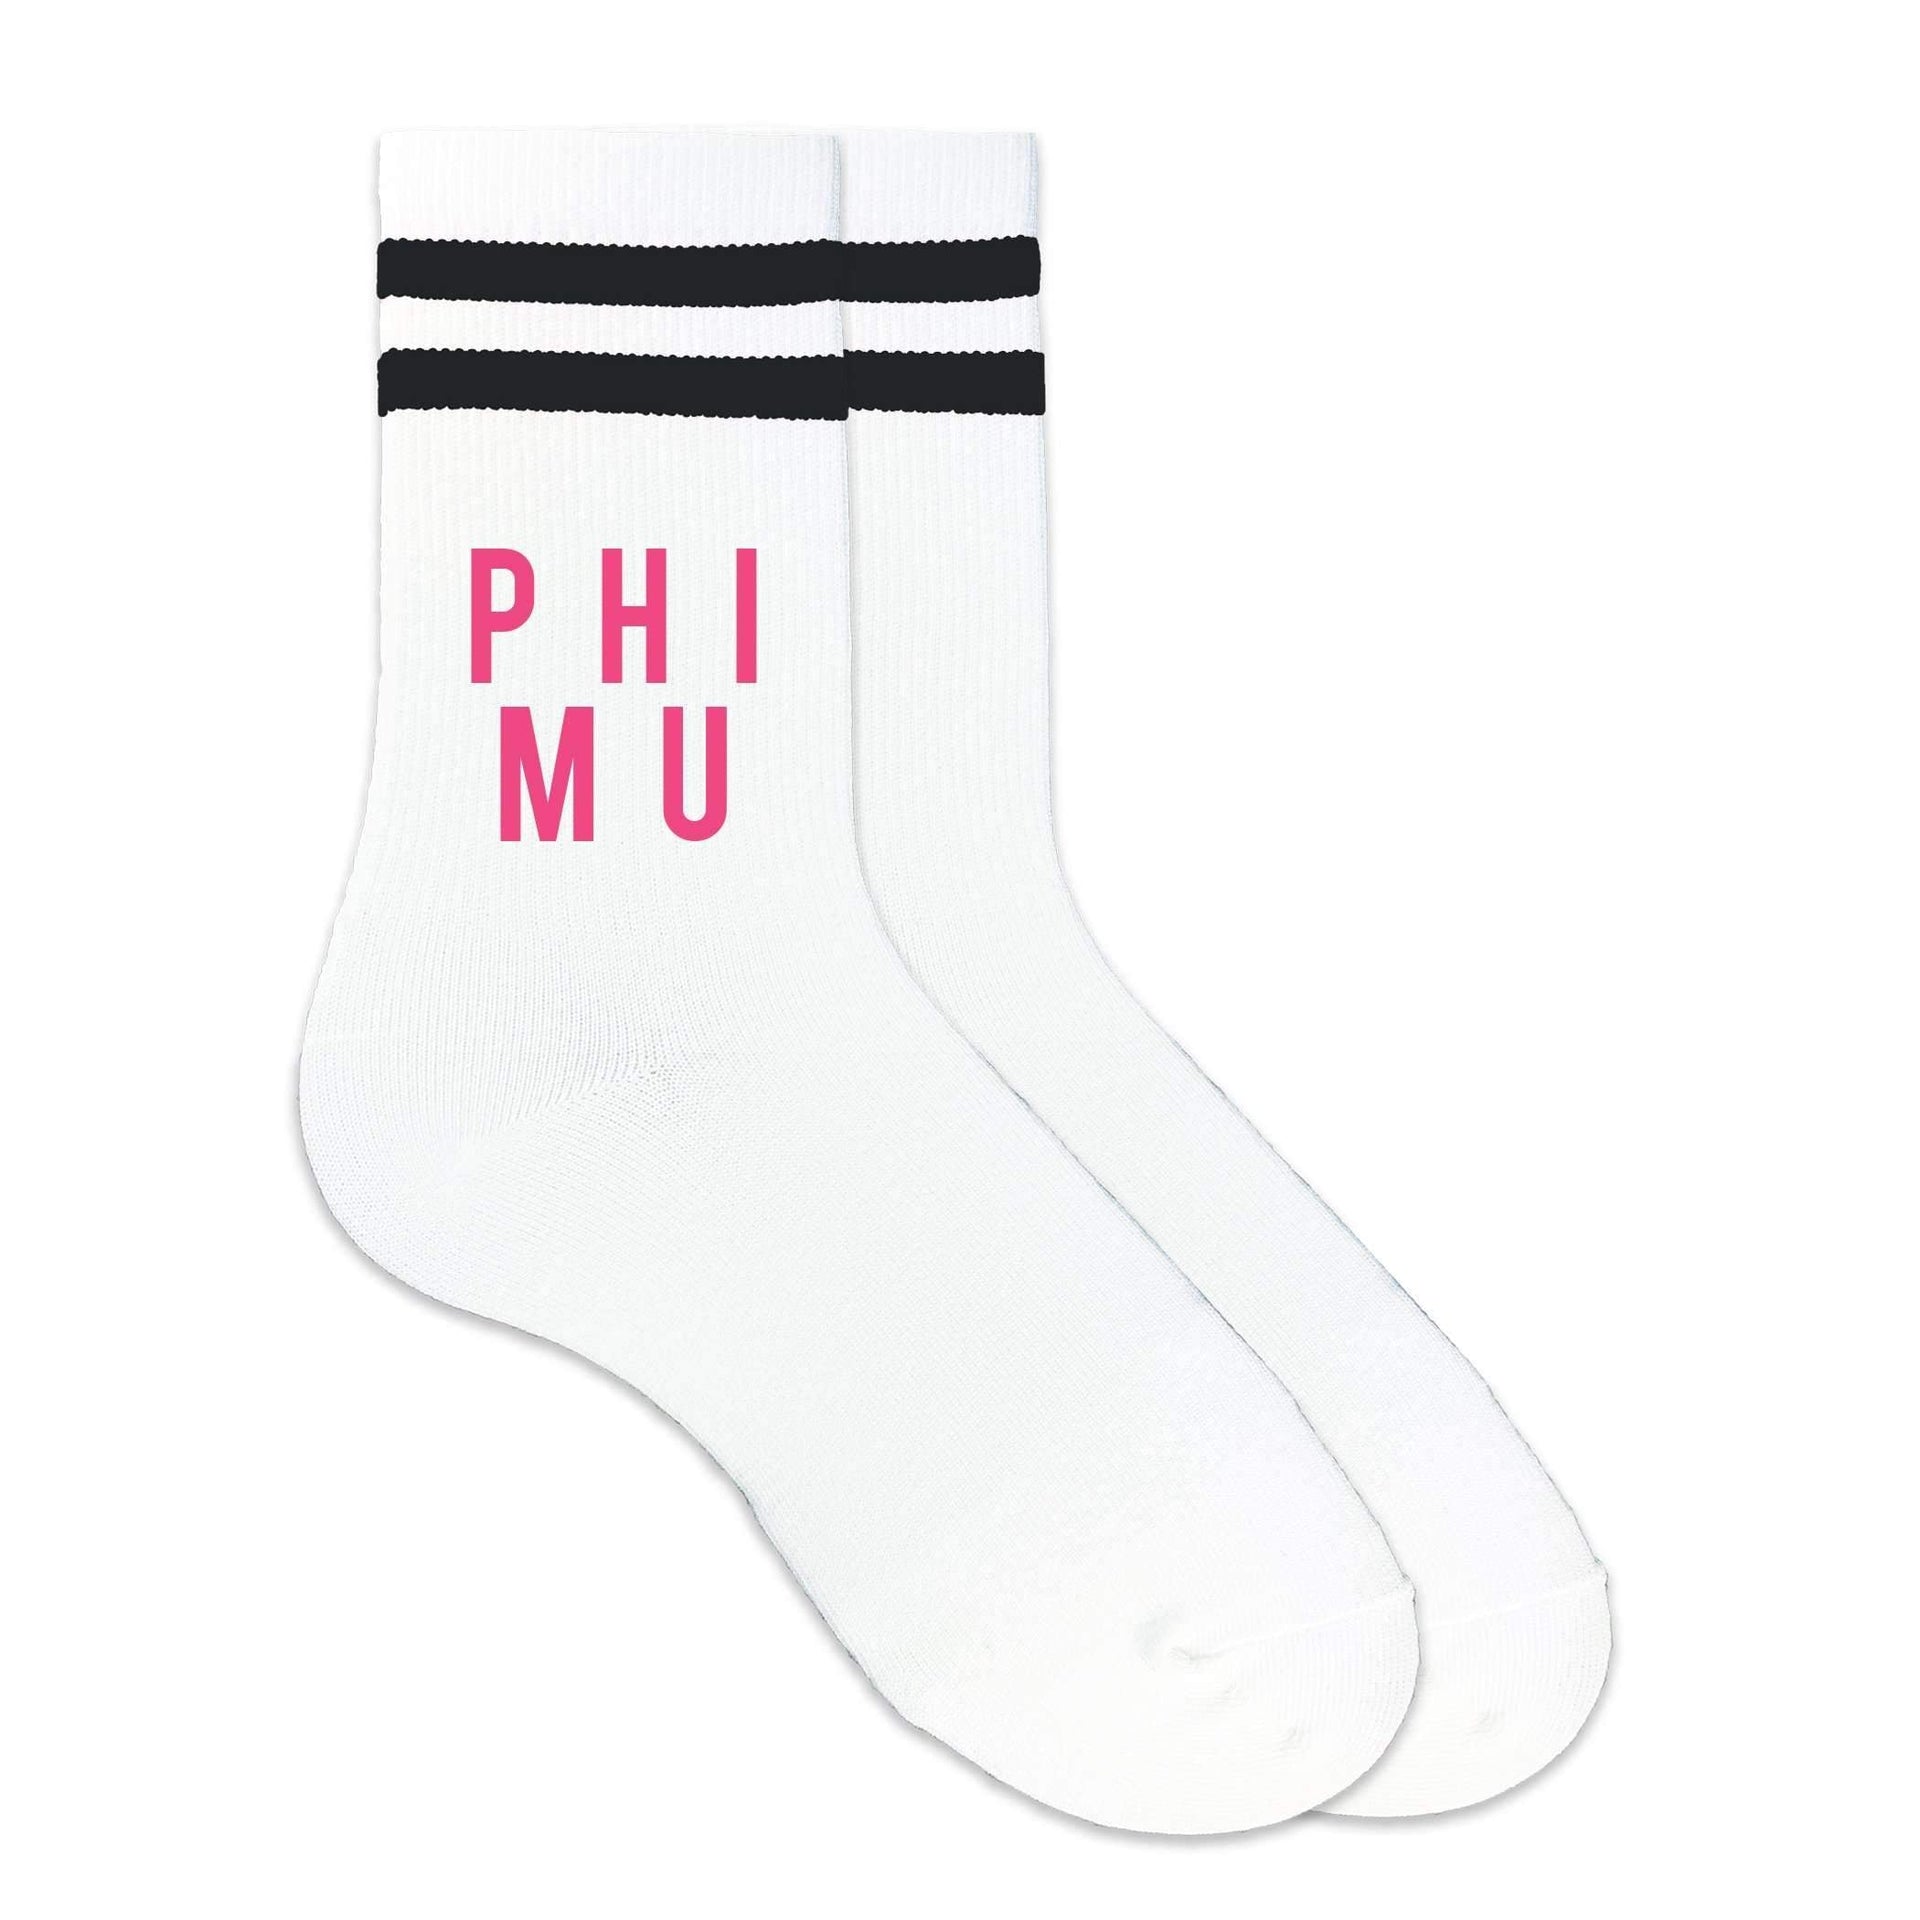 Phi Mu sorority name custom printed in sorority colors on black striped crew socks